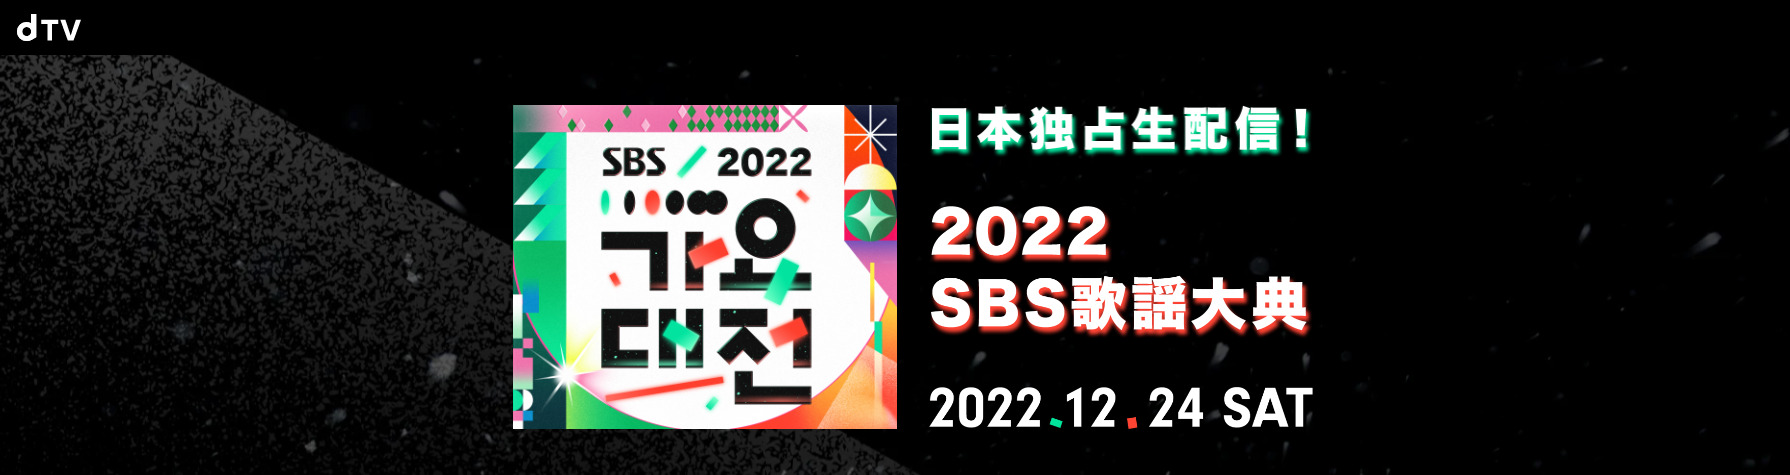 SBS歌謡祭2022